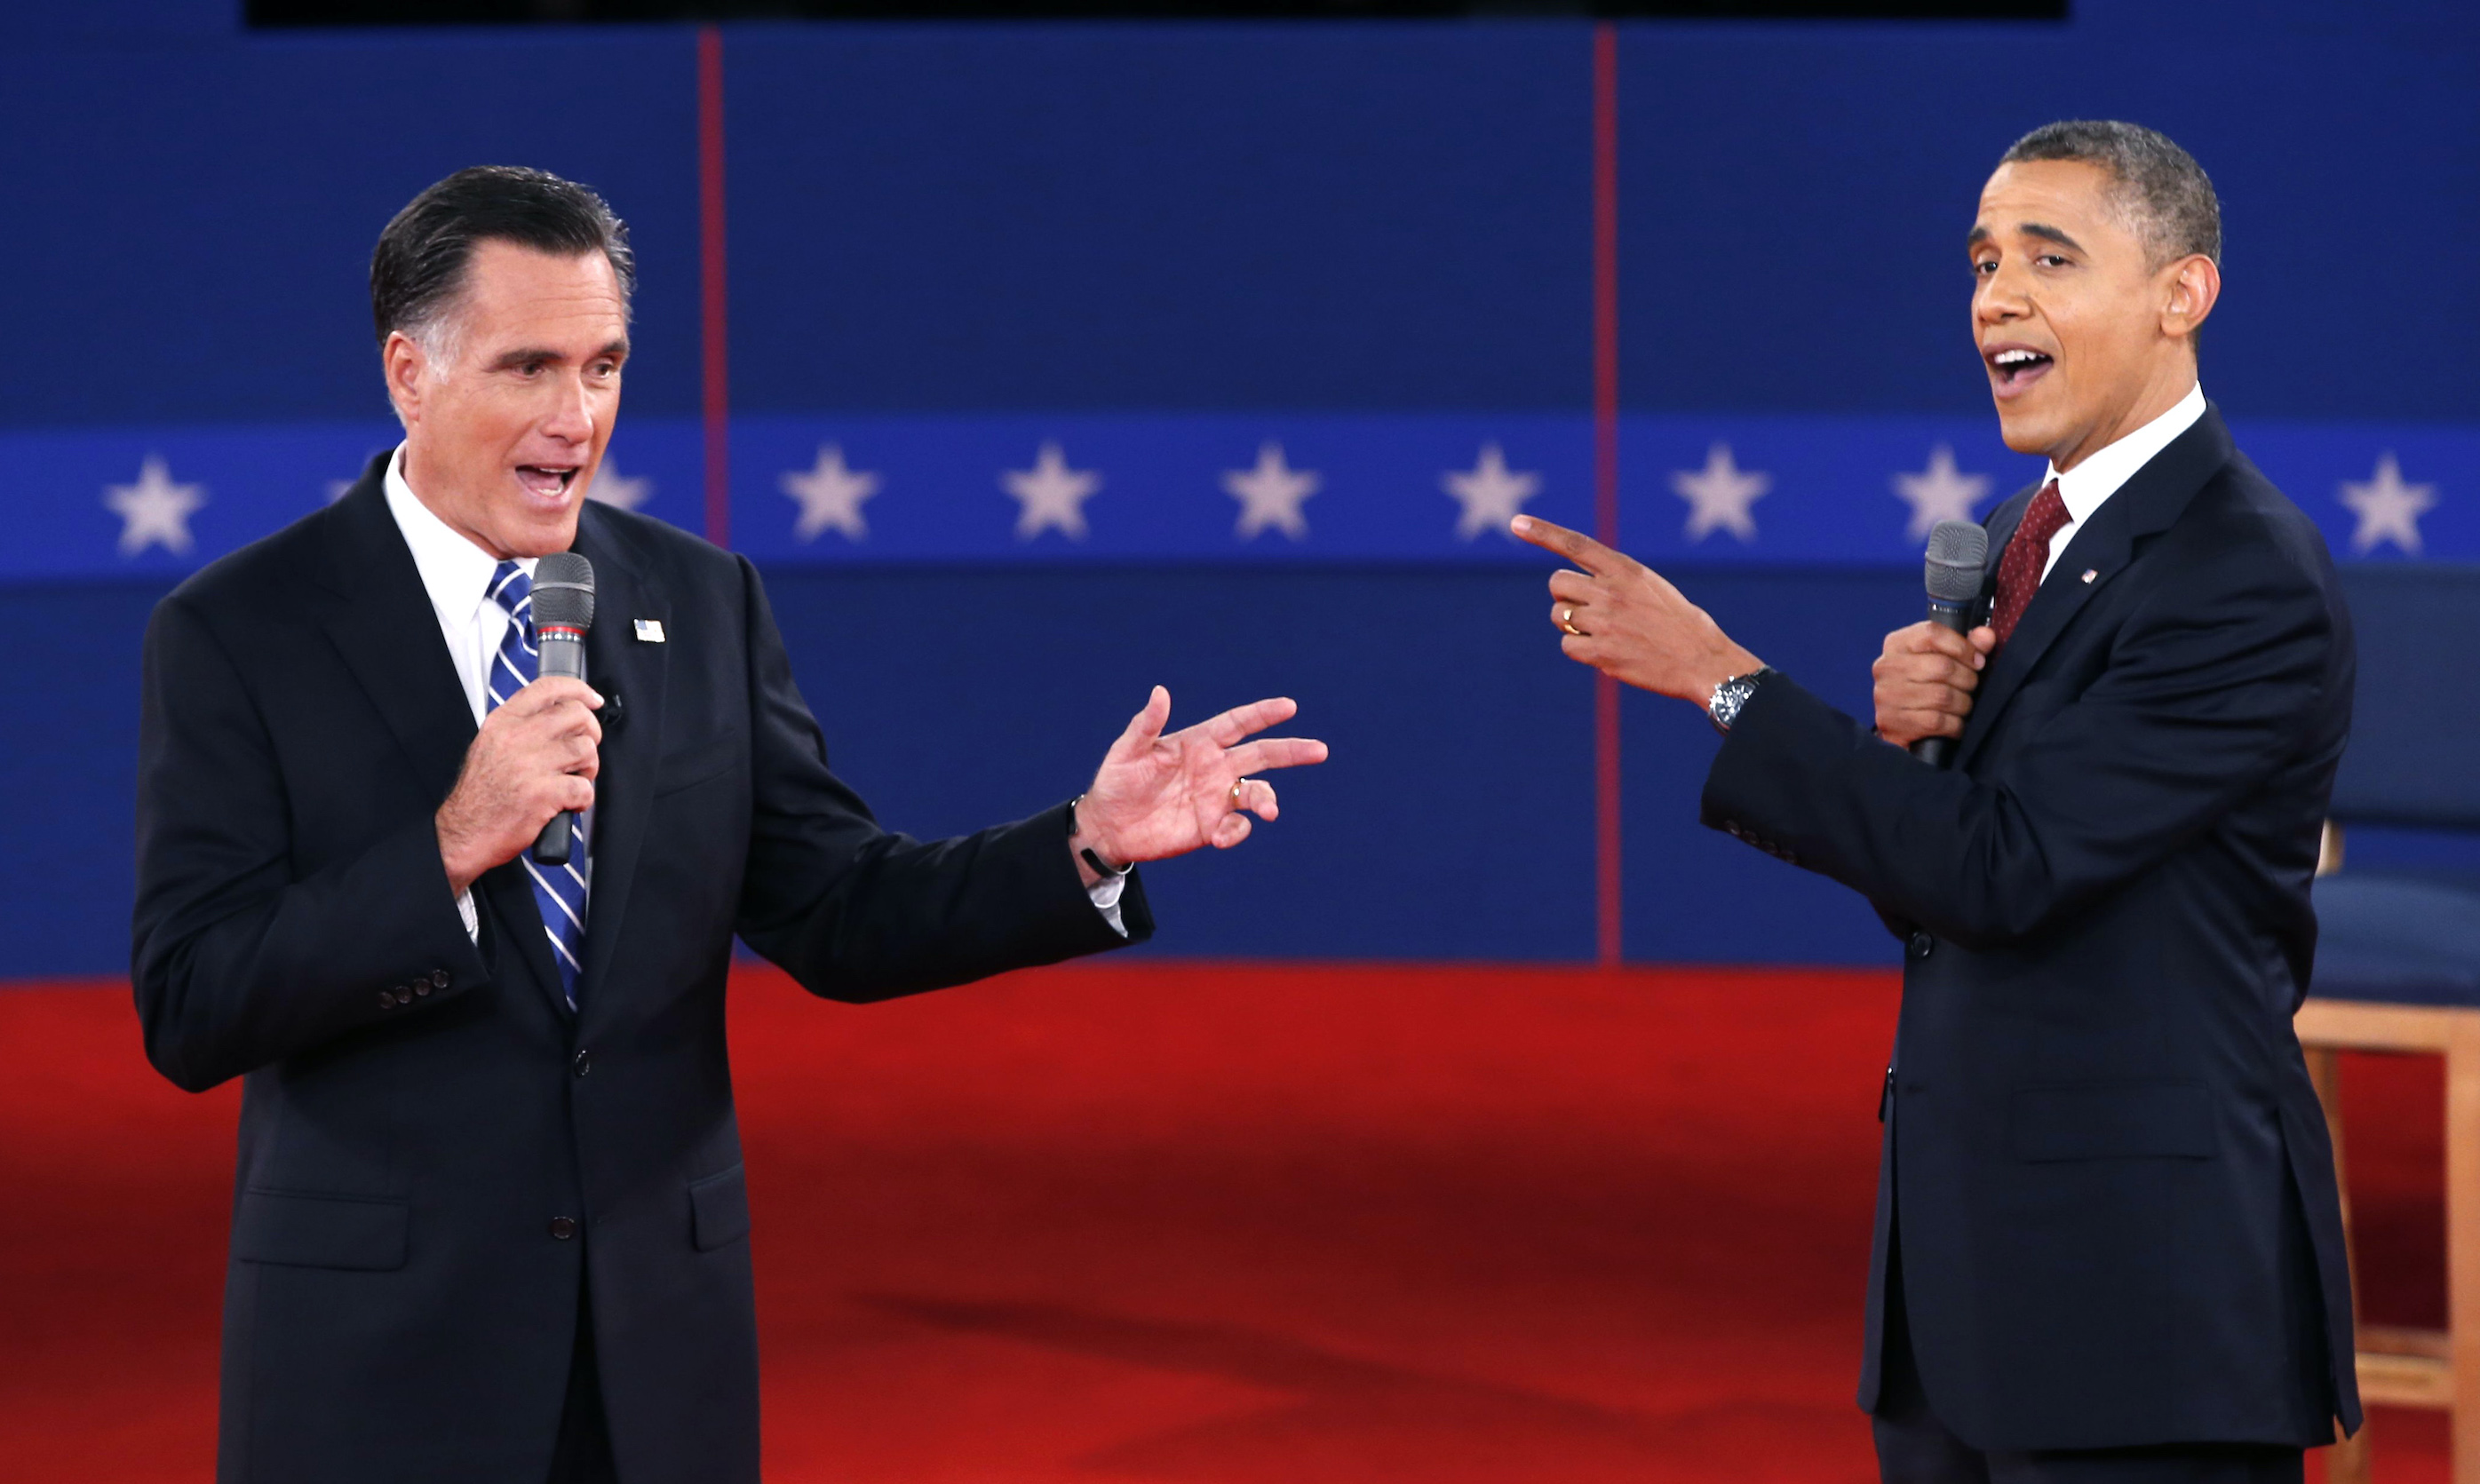 Obama vs romney debate